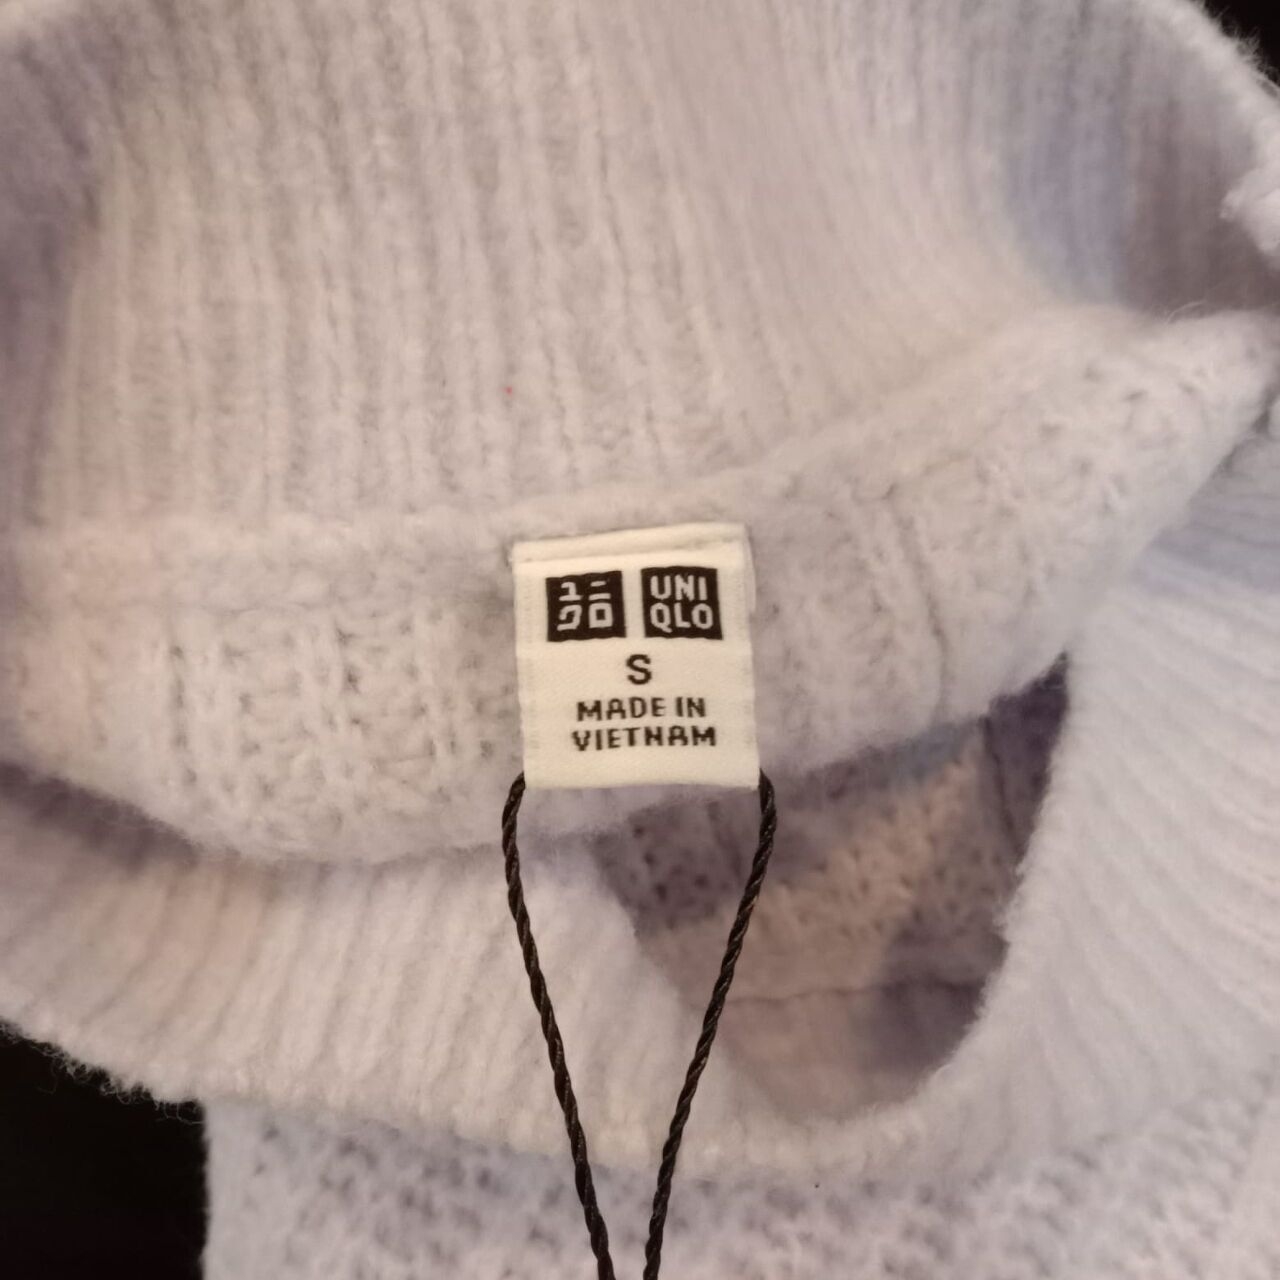 Uniqlo Lilac Sweater